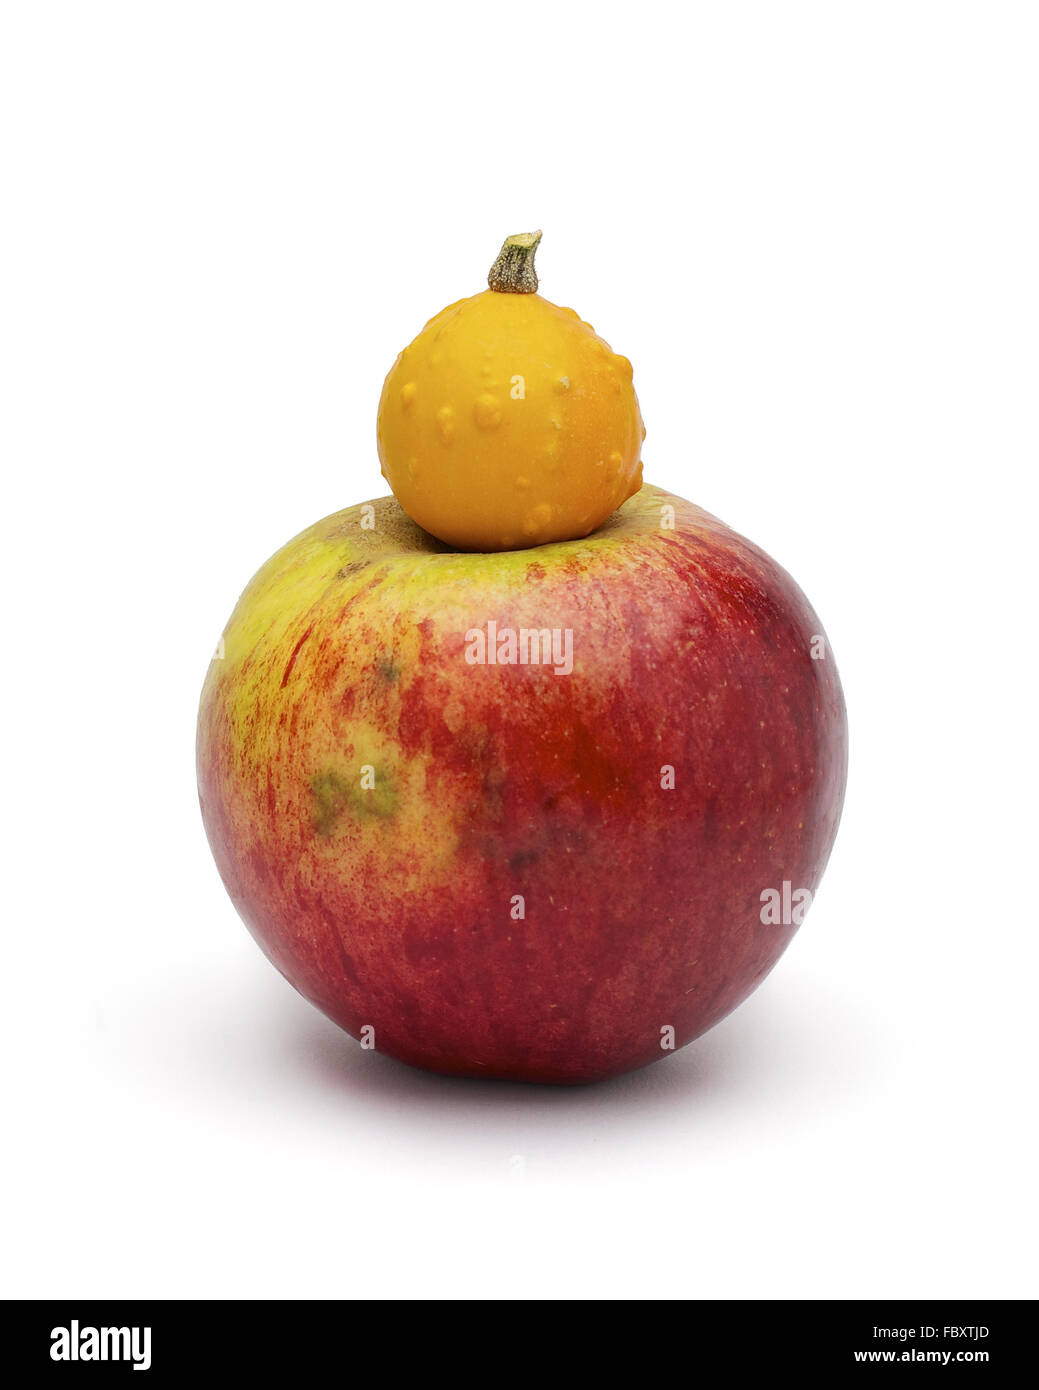 Vergleich in der Größe: Kürbis-Apfel Stockfoto